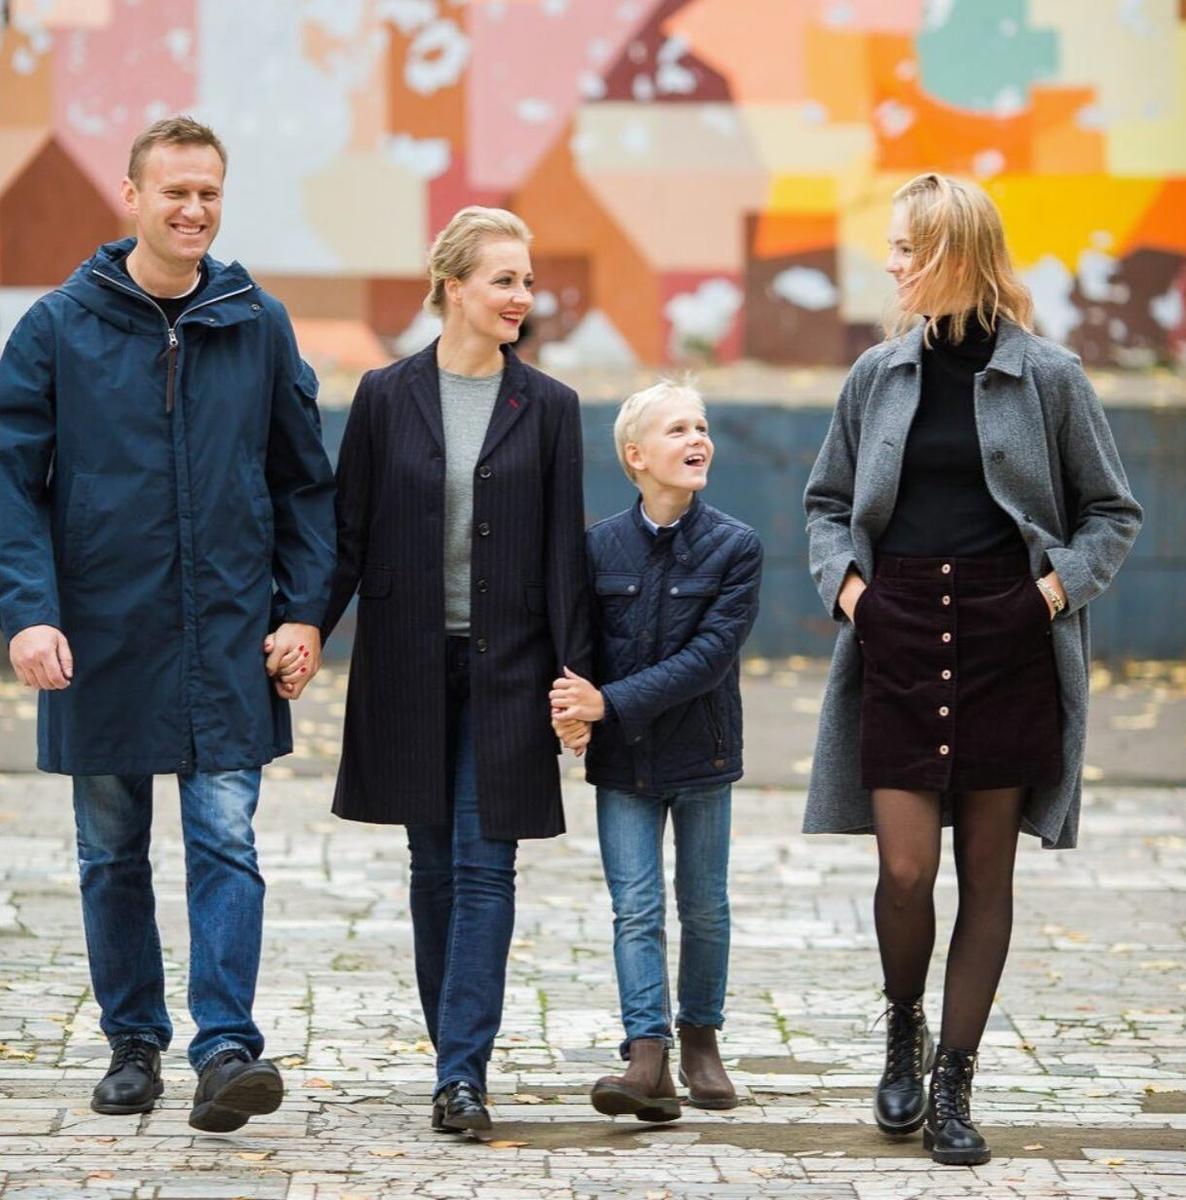 The Navalny family. Photo: Yulia Navalnaya’s Instagram